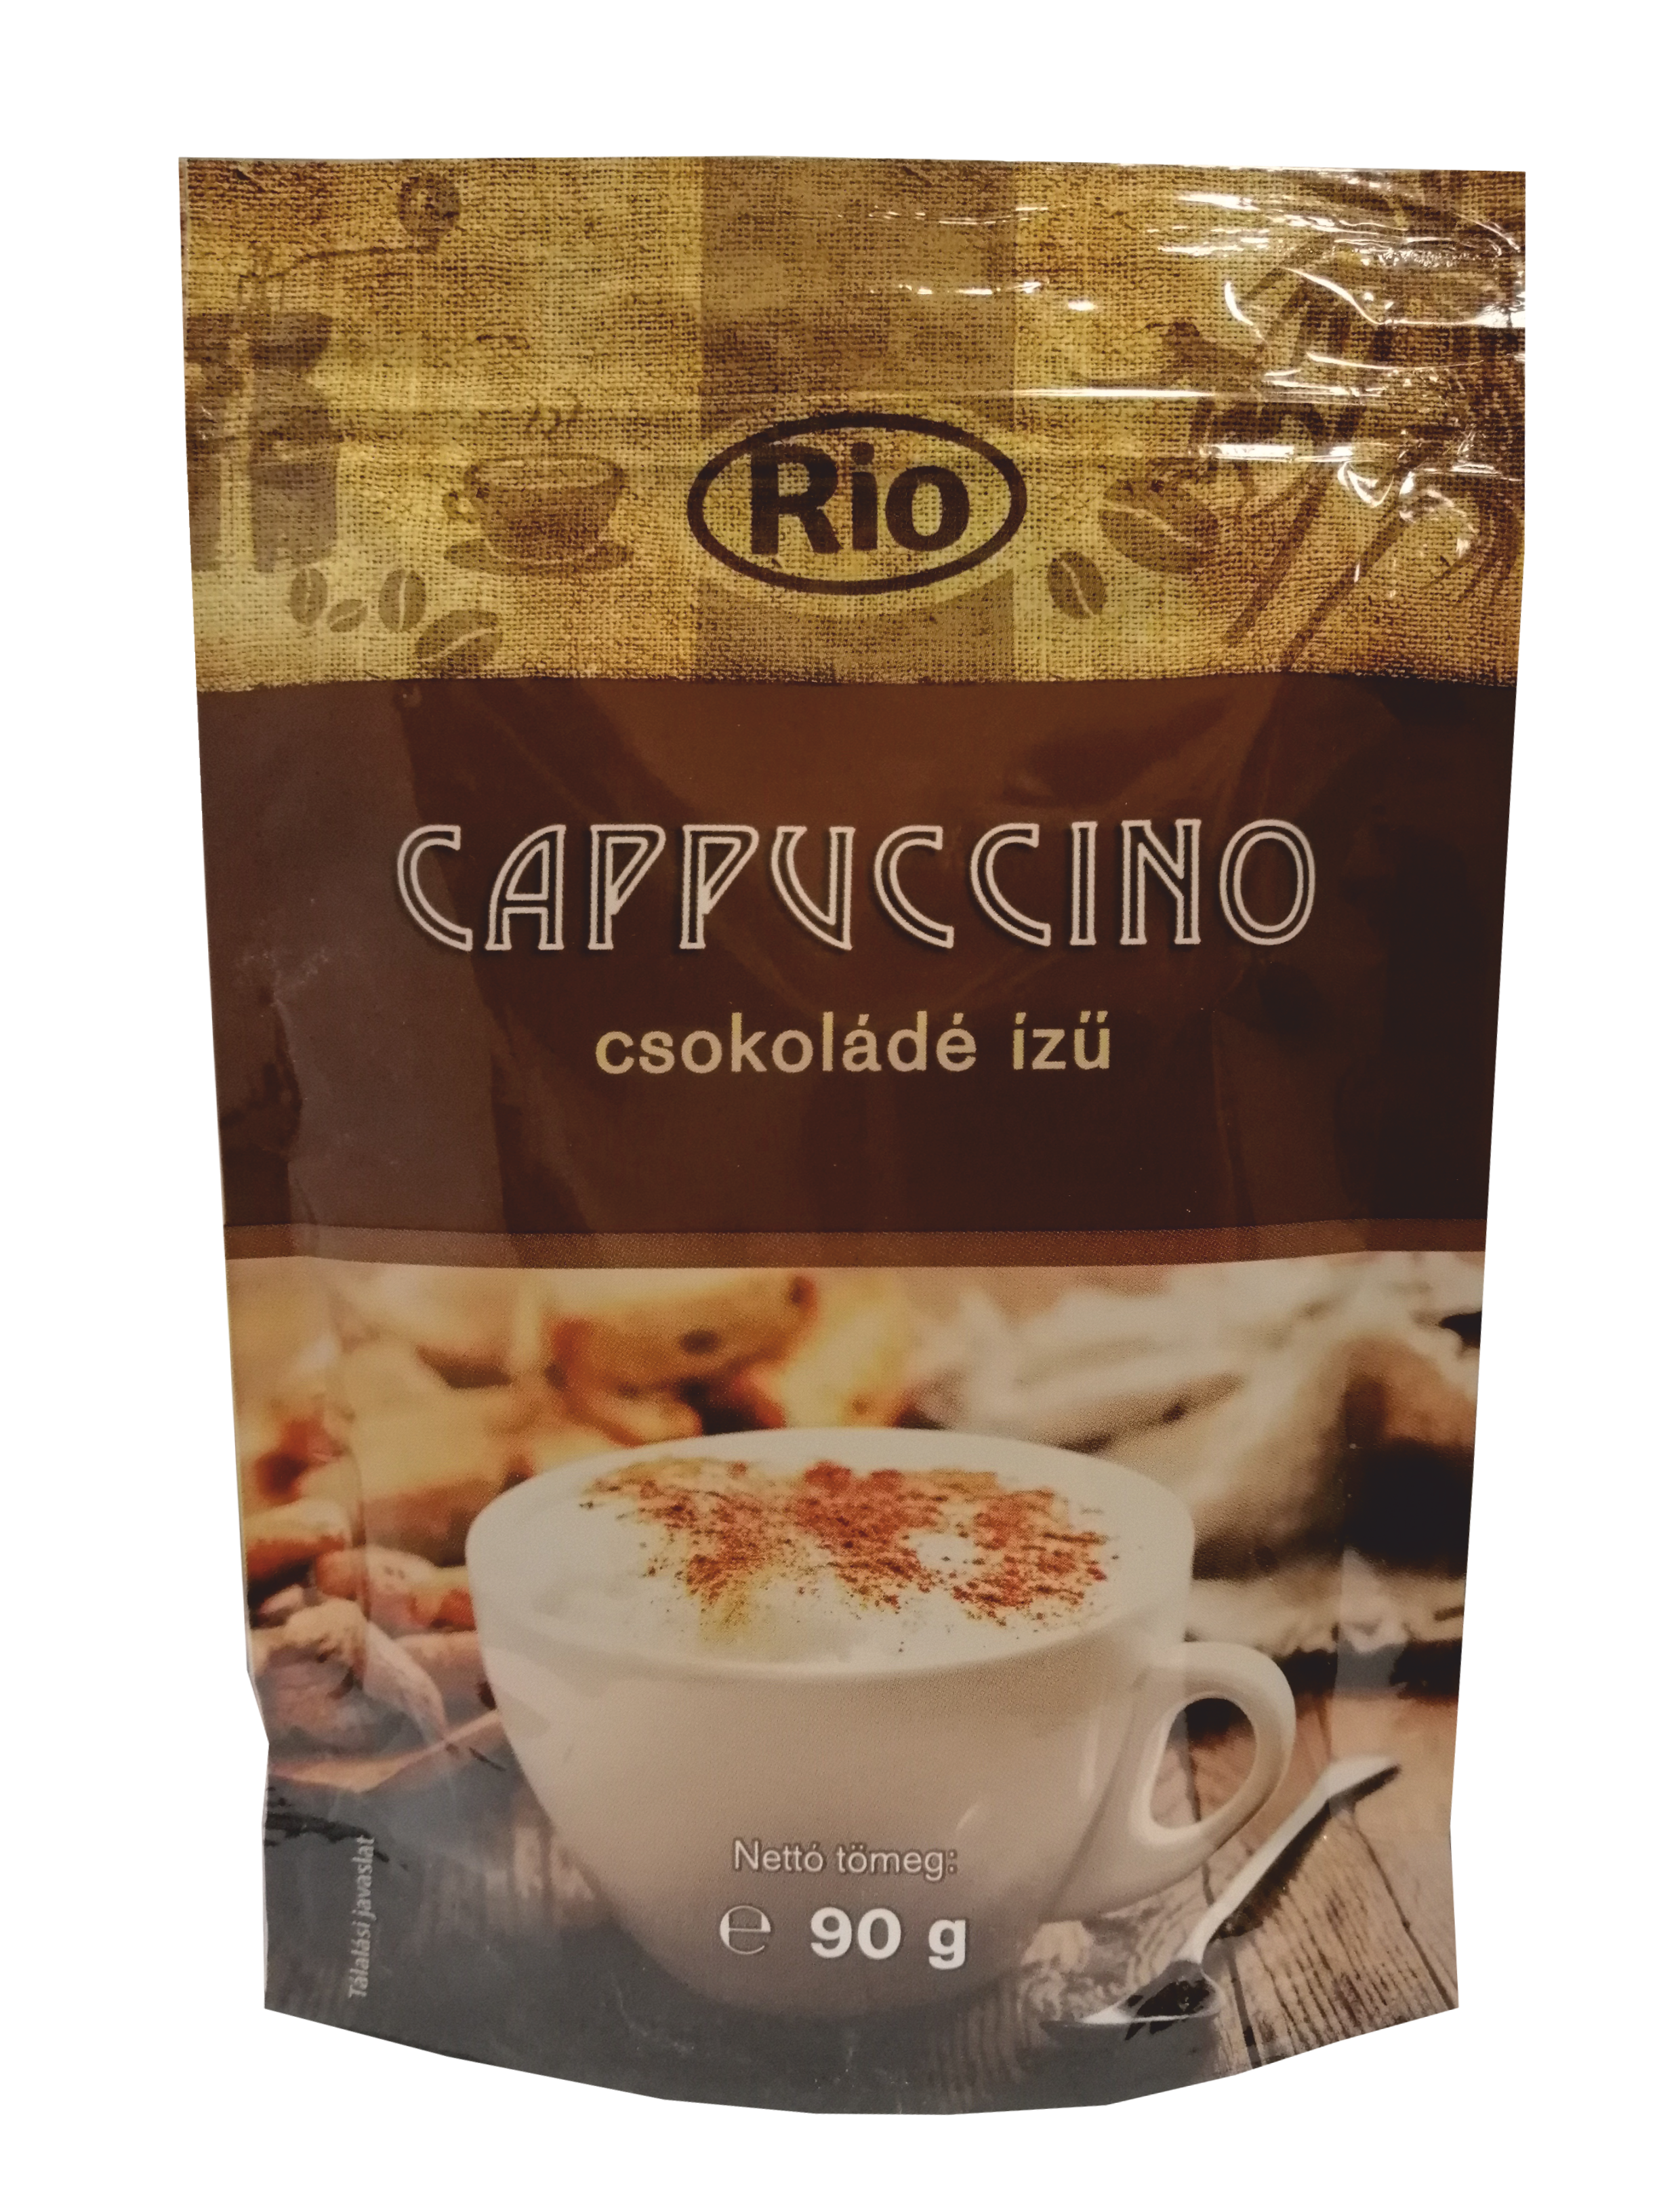 .Rio cappuccino 90g csokoládé